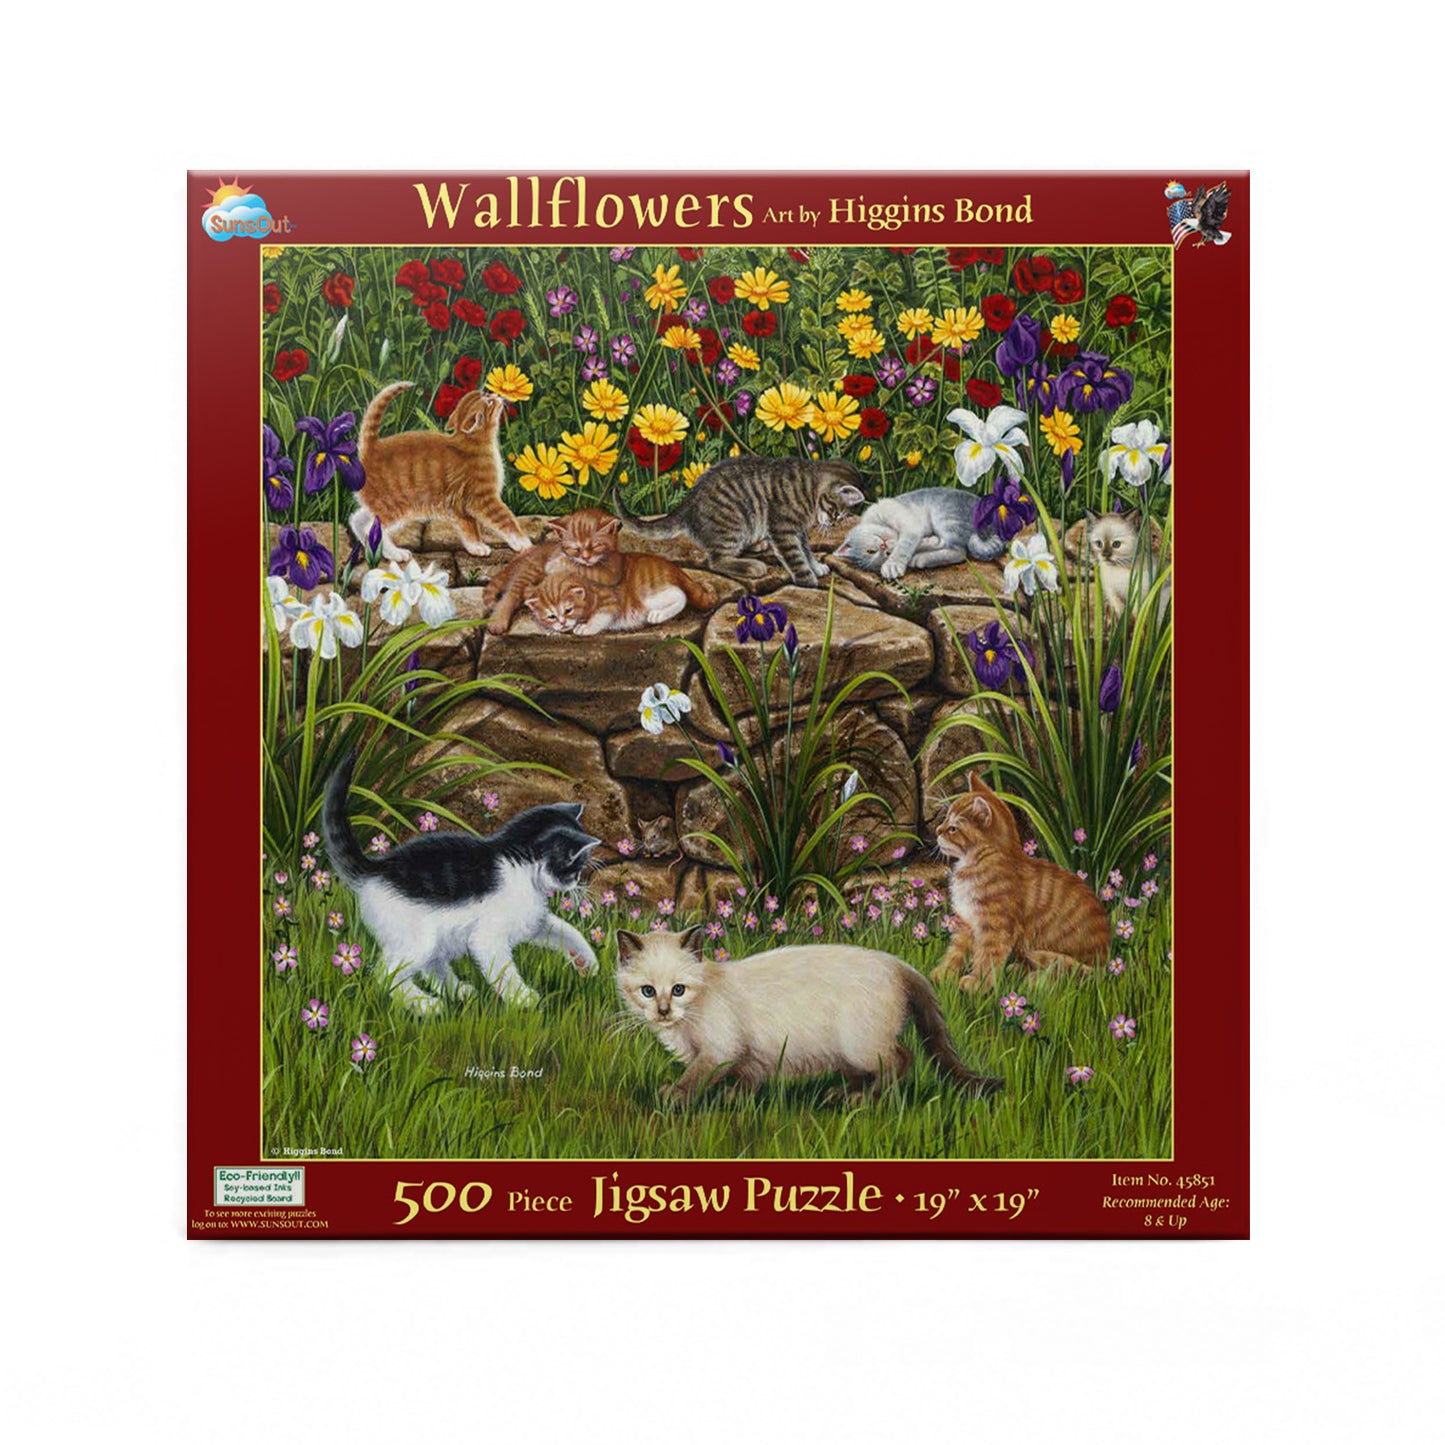 Wall Flowers - 500 Piece Jigsaw Puzzle